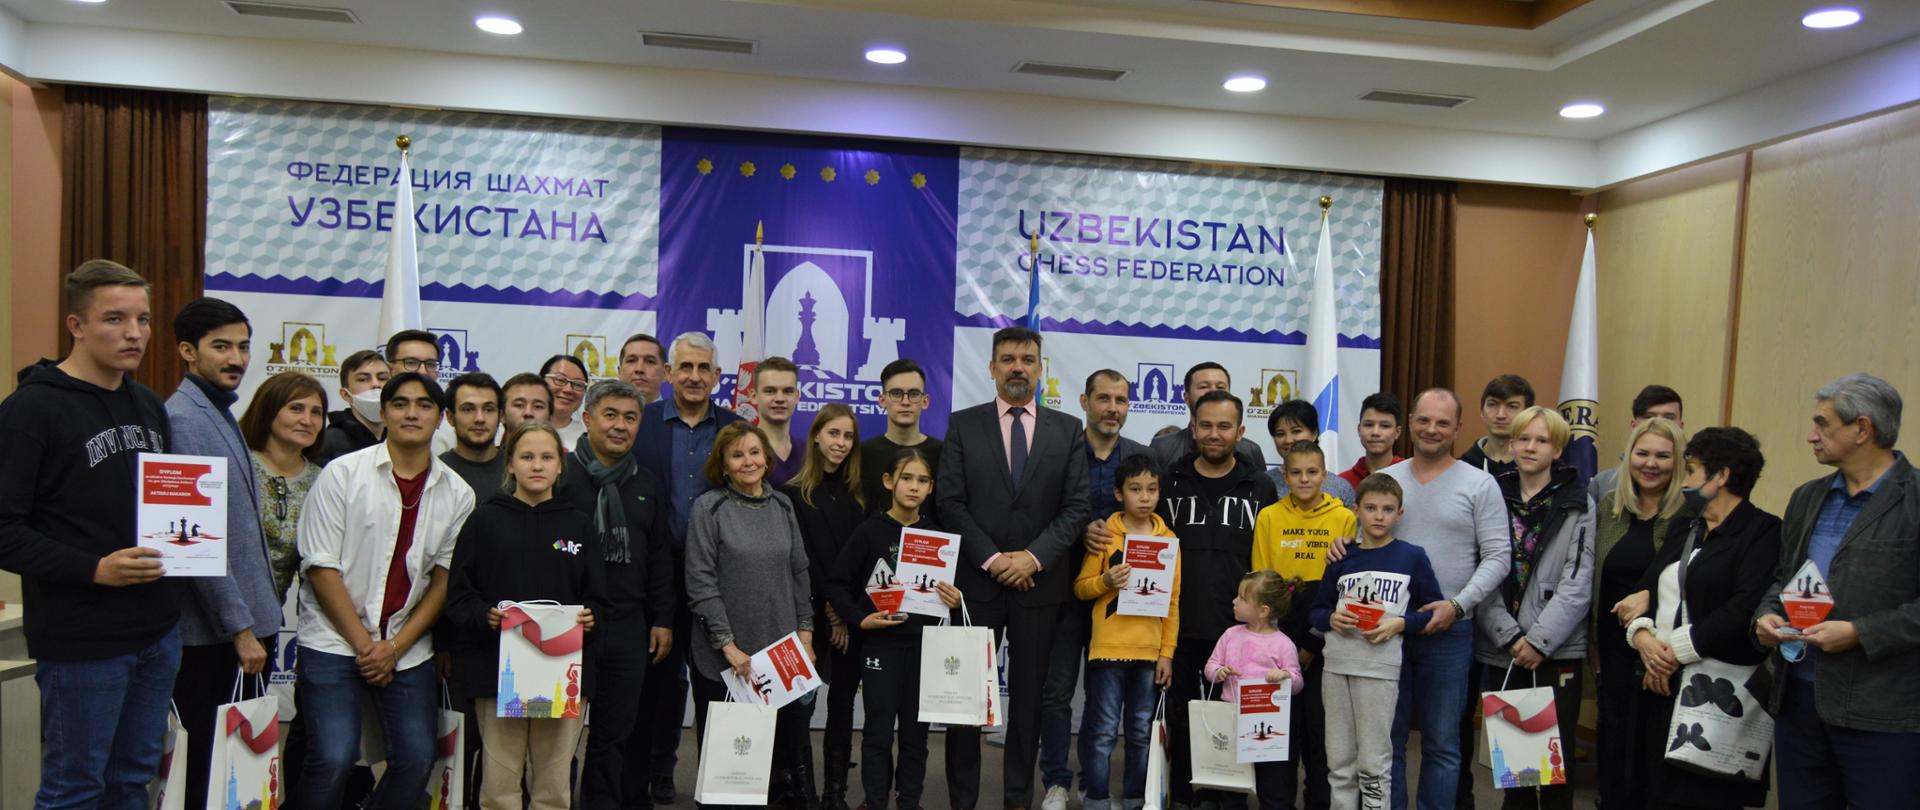 Играем для Независимой в Ташкенте